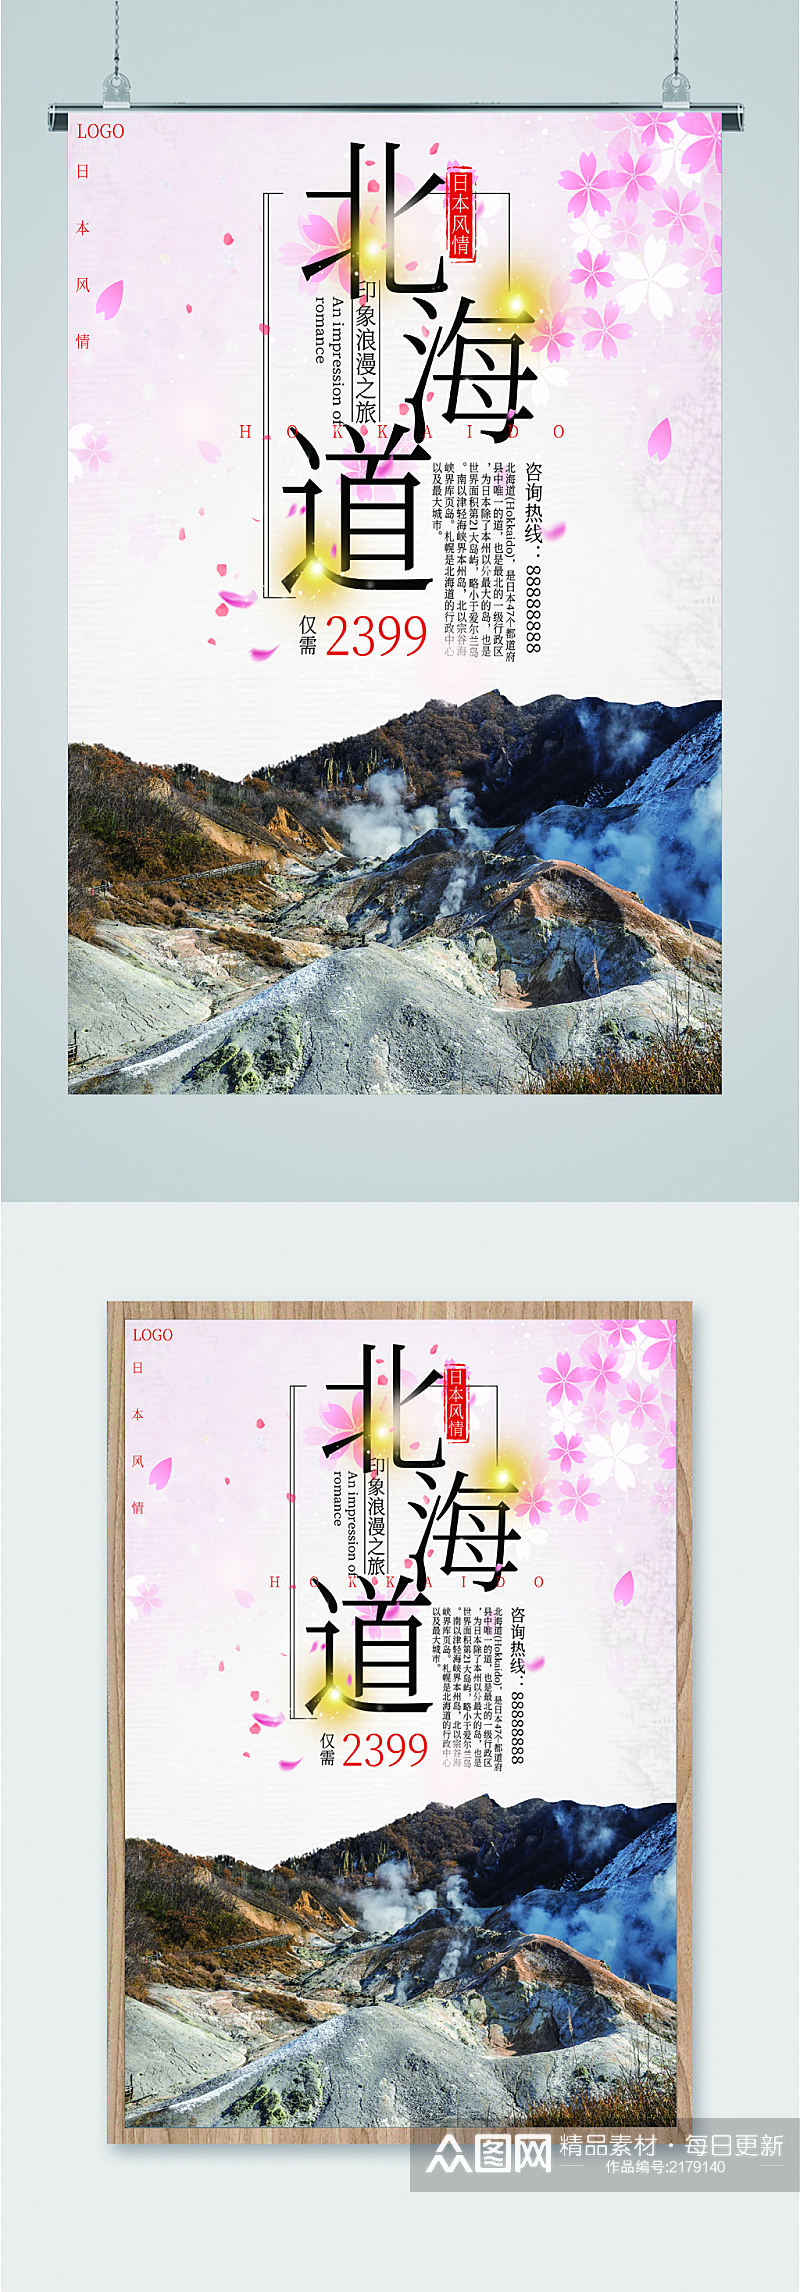 北海道风景旅游海报素材